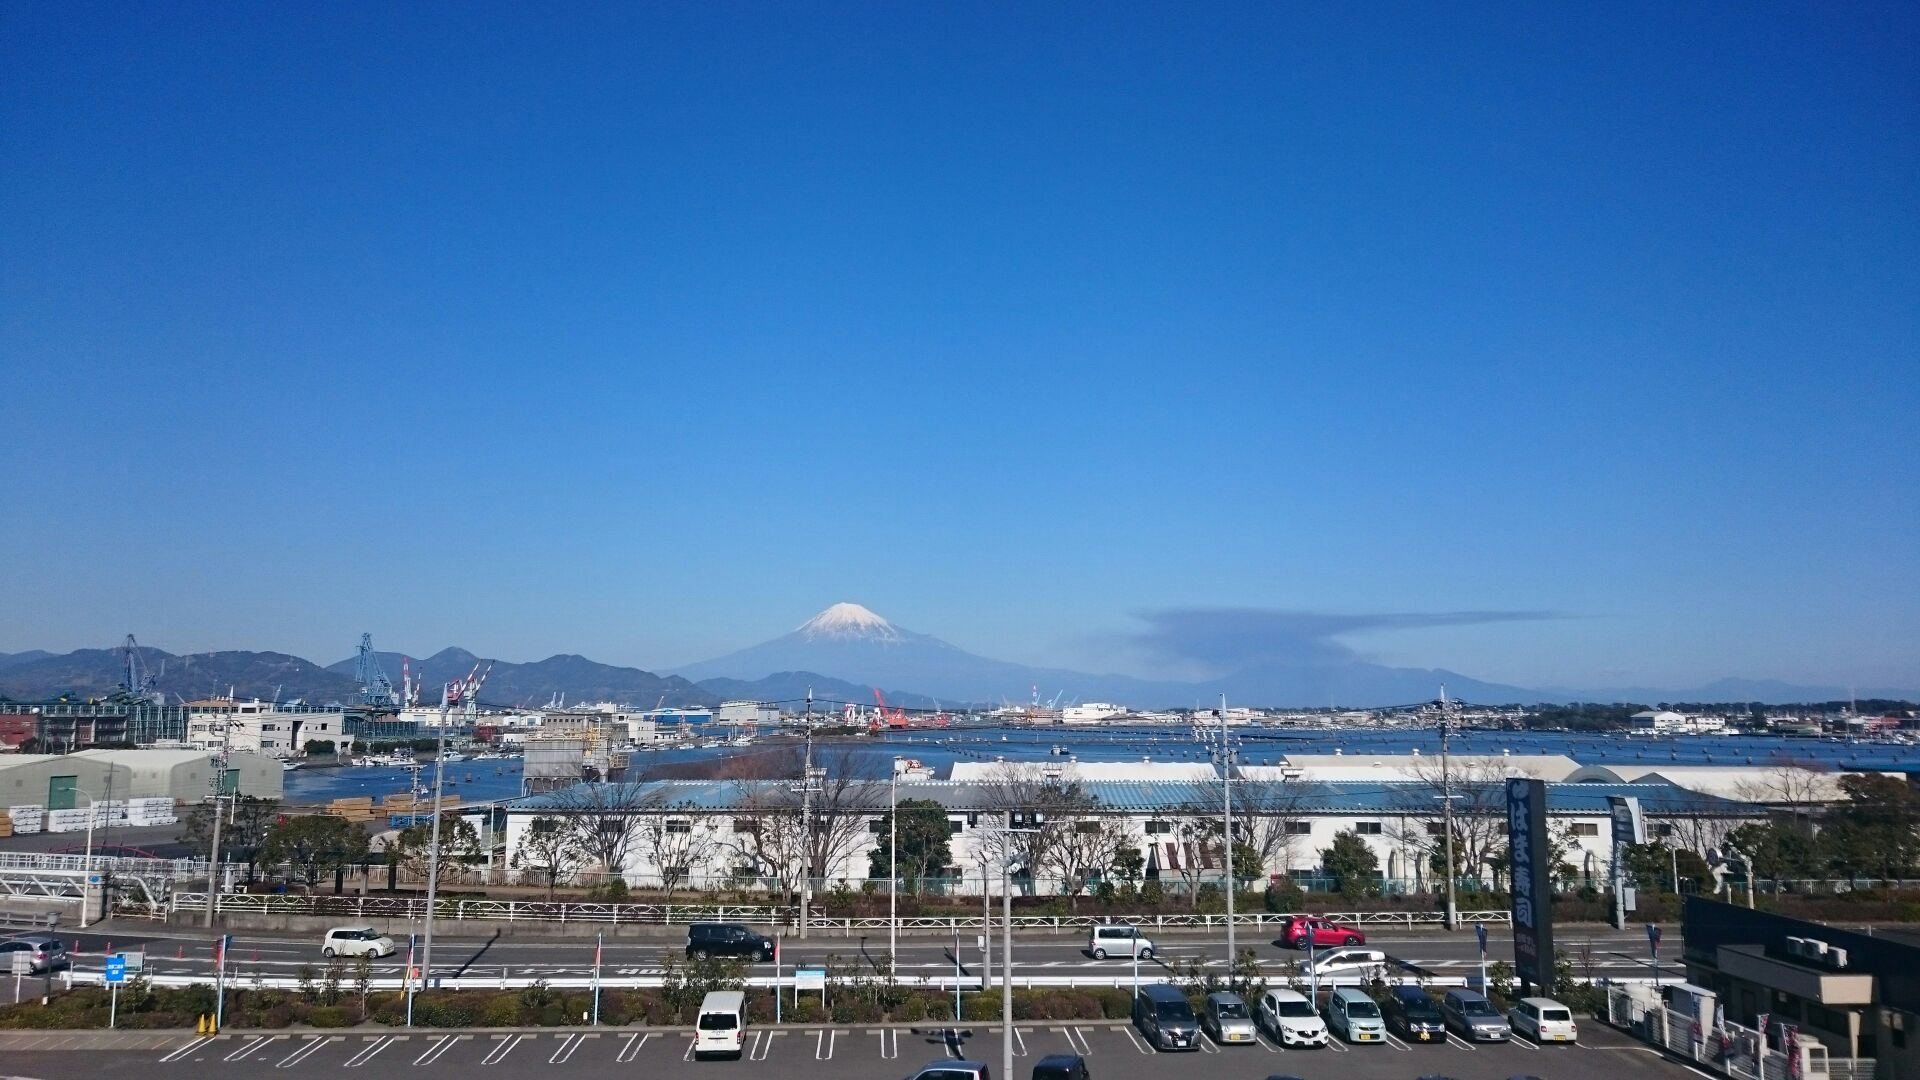 ベイドリーム清水からの富士山 Mt Fuji View Spot 富士山 Chafuka